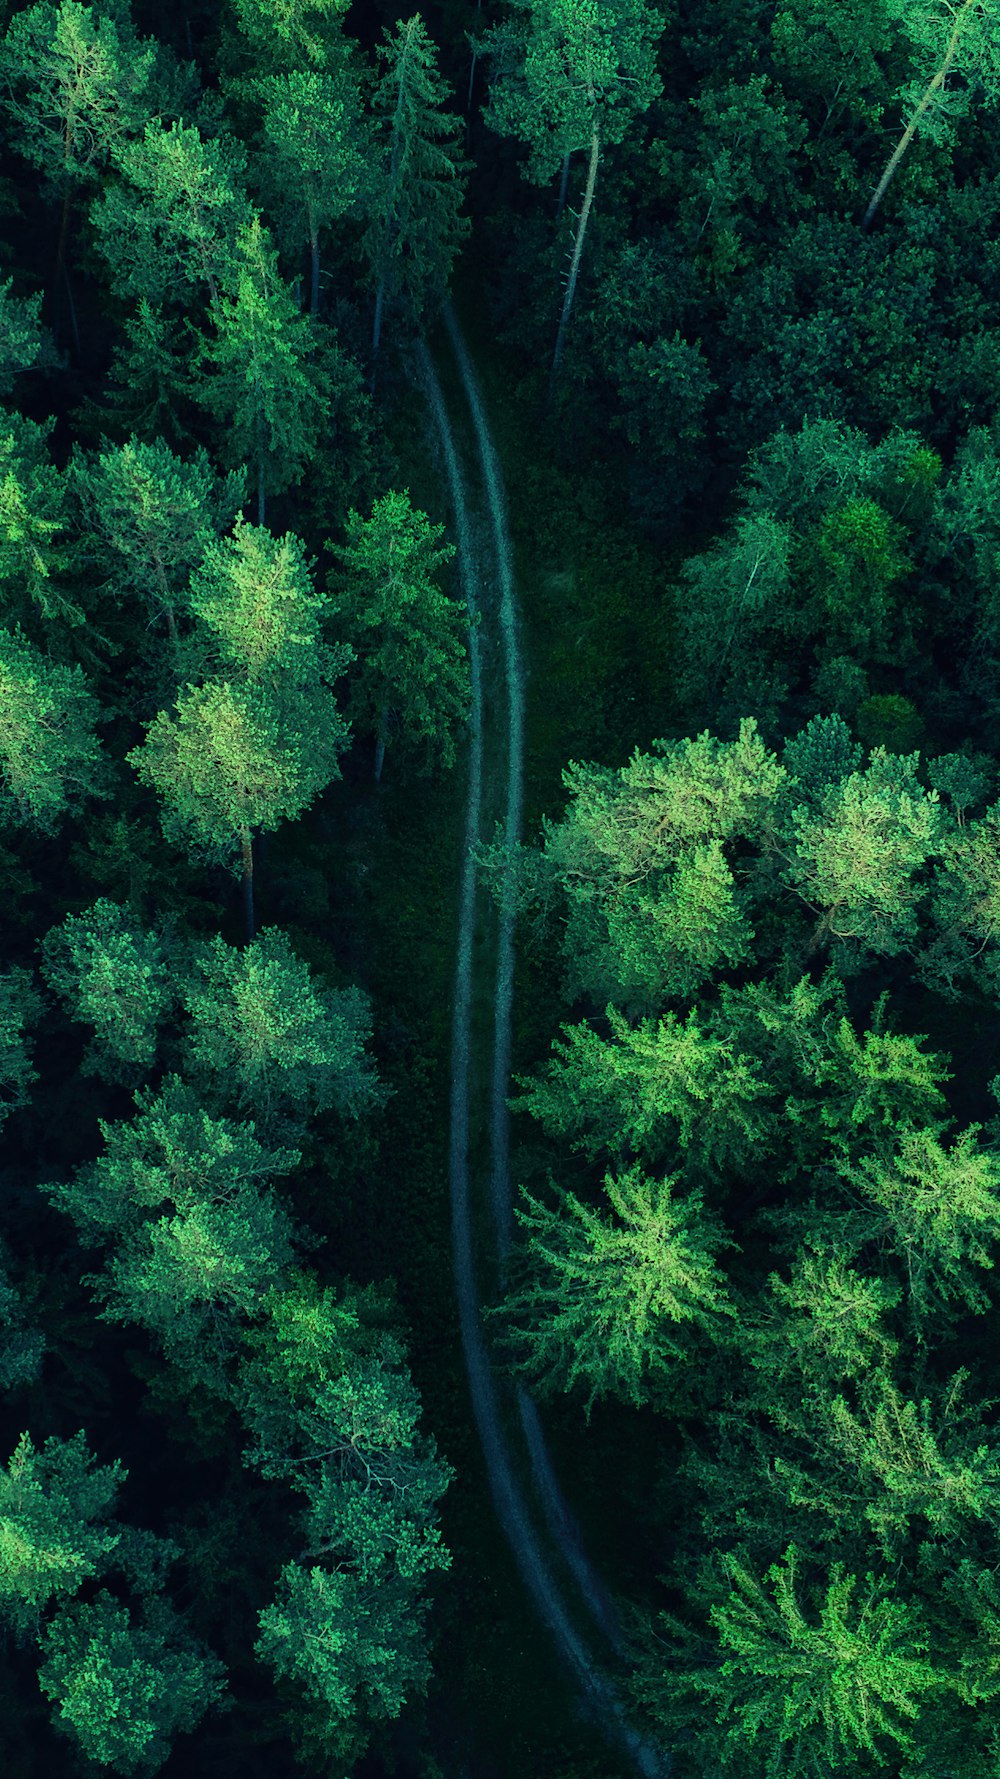 Una veduta aerea di una strada in mezzo a una foresta